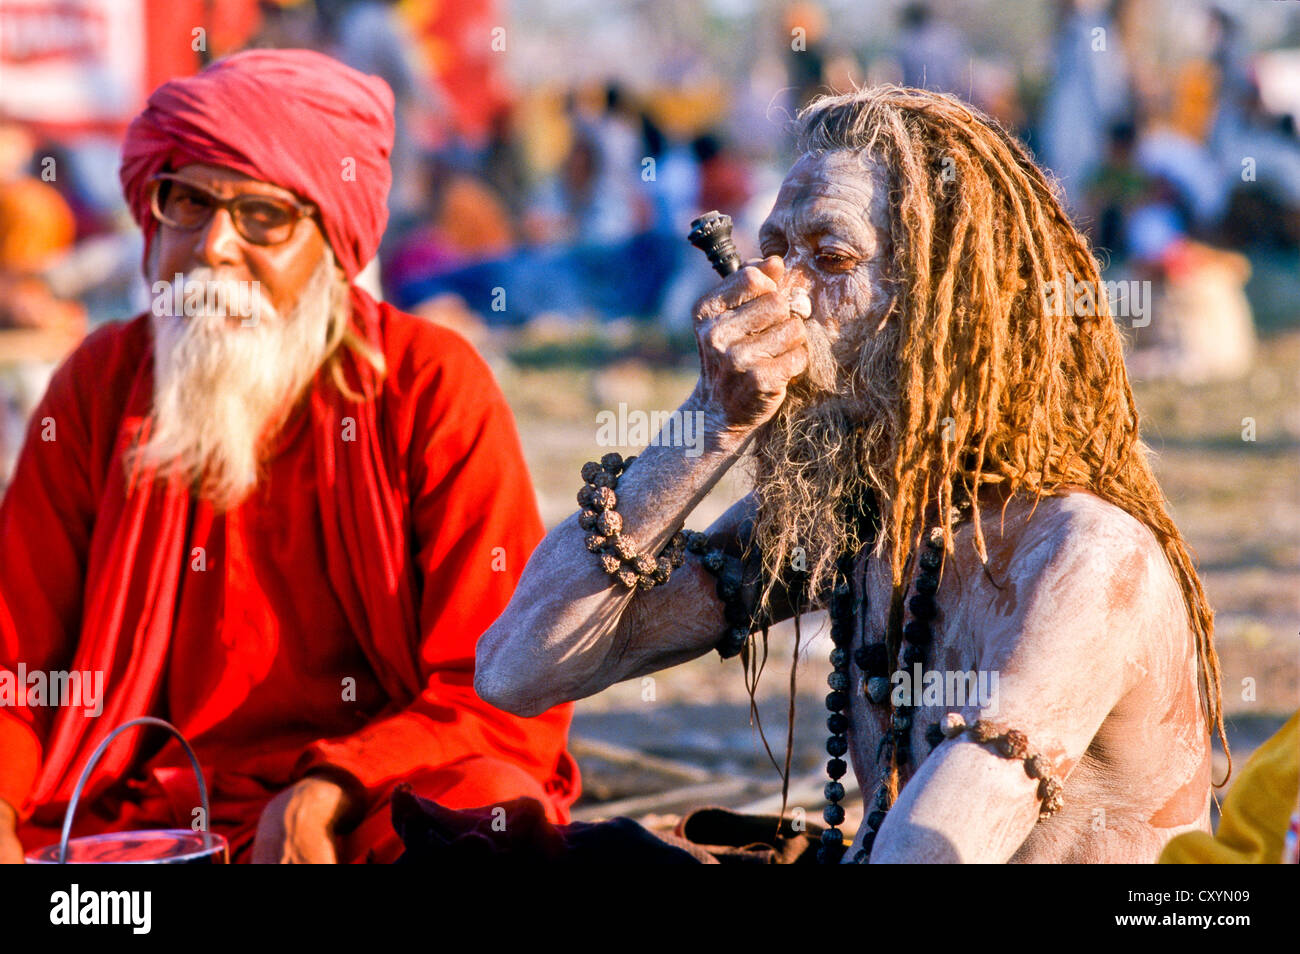 Sadhu, holy man, smoking marihuana during Kumbh Mela or Kumbha Mela, Haridwar, India, Asia Stock Photo